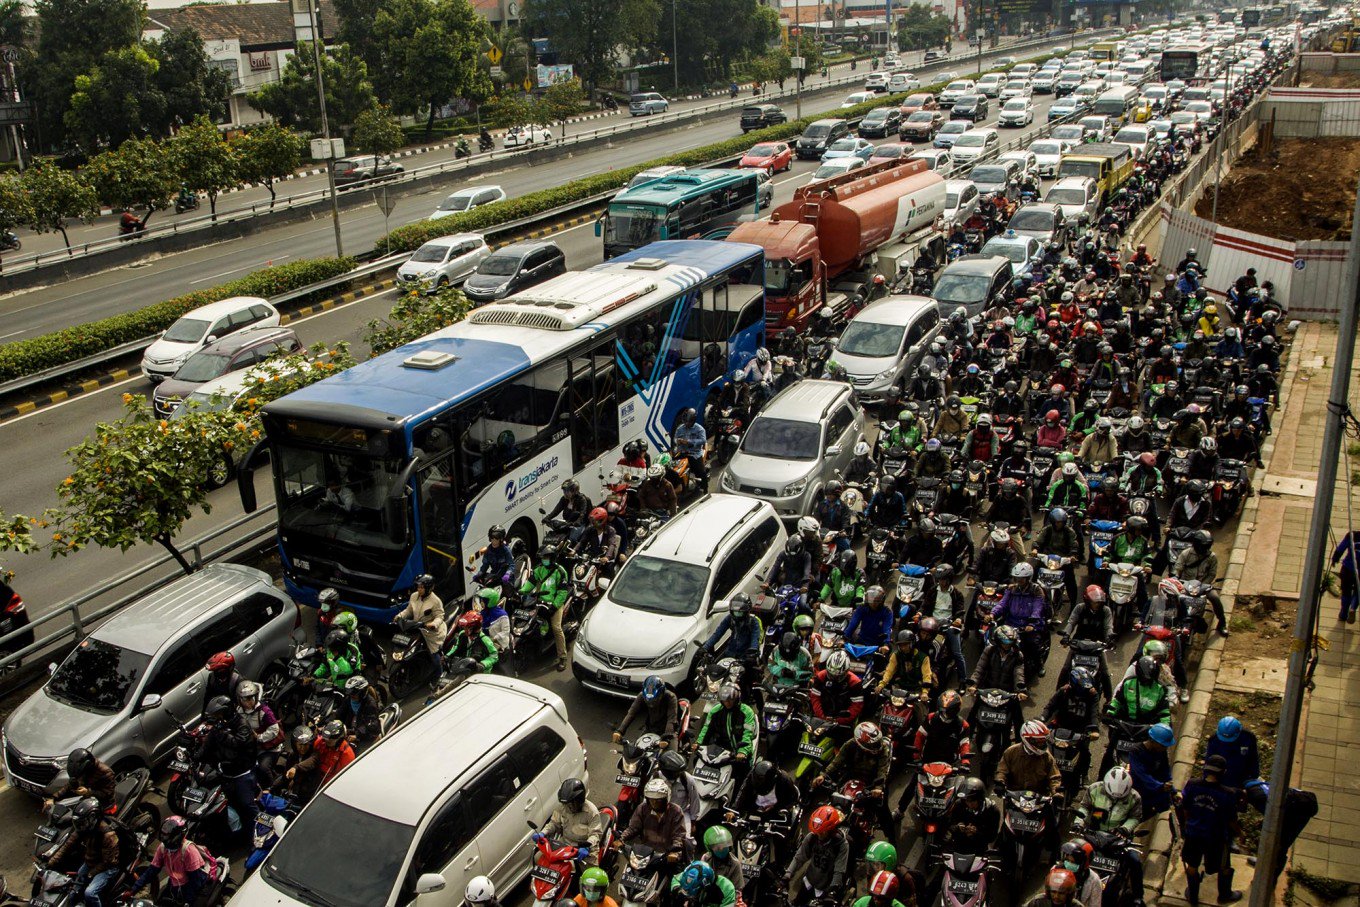  Tingkat Keparahan Macetnya Jakarta Dilihat dari Jenis Pedagang Asongan